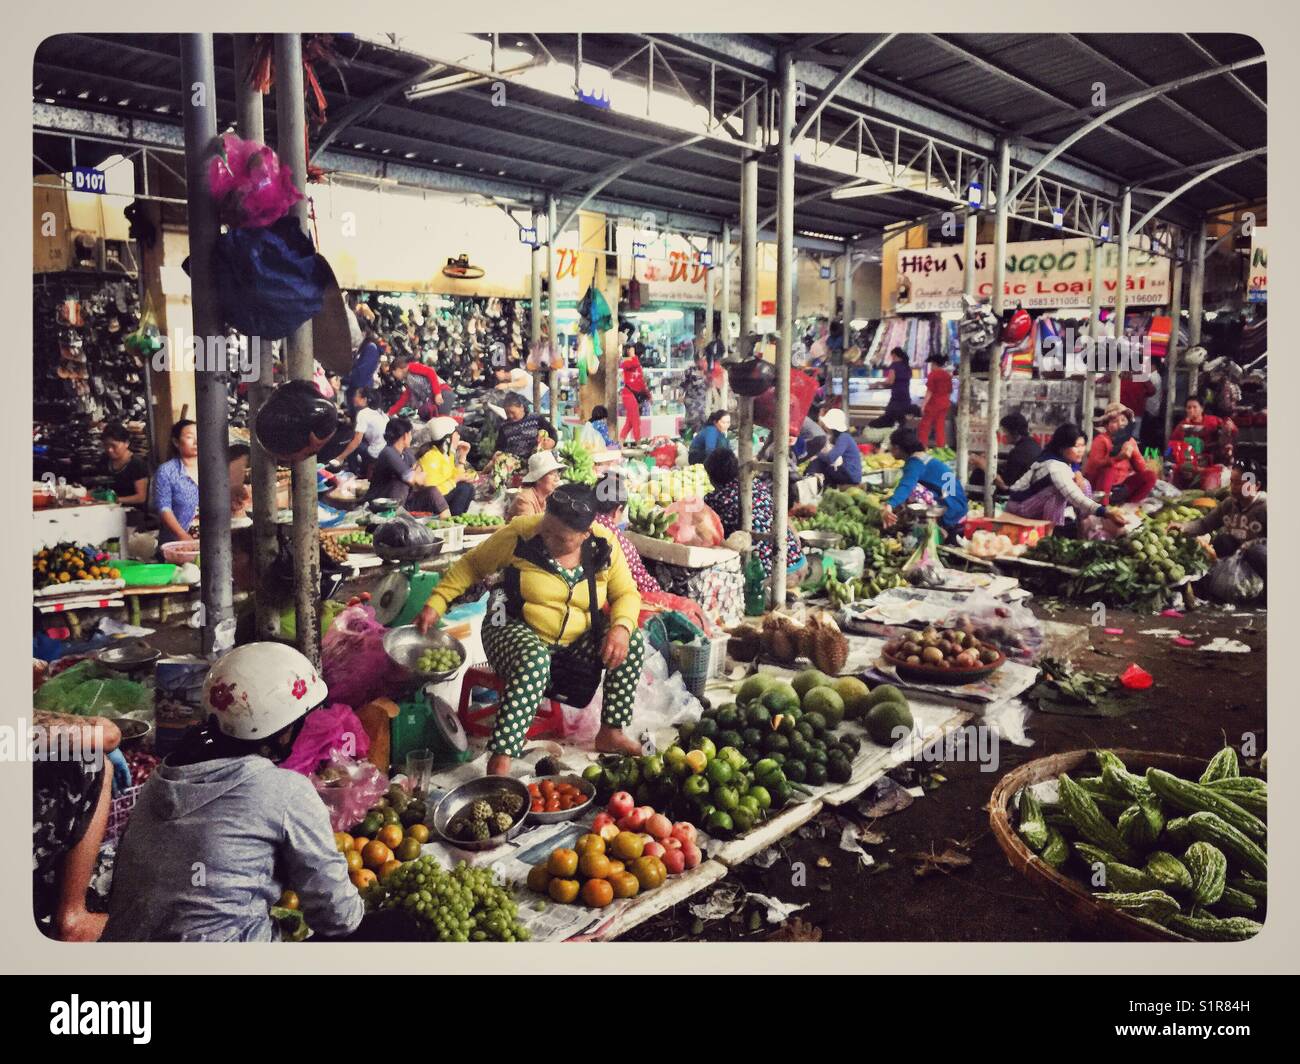 Daily local livelihood at nha trang cho xom moi market. Stock Photo